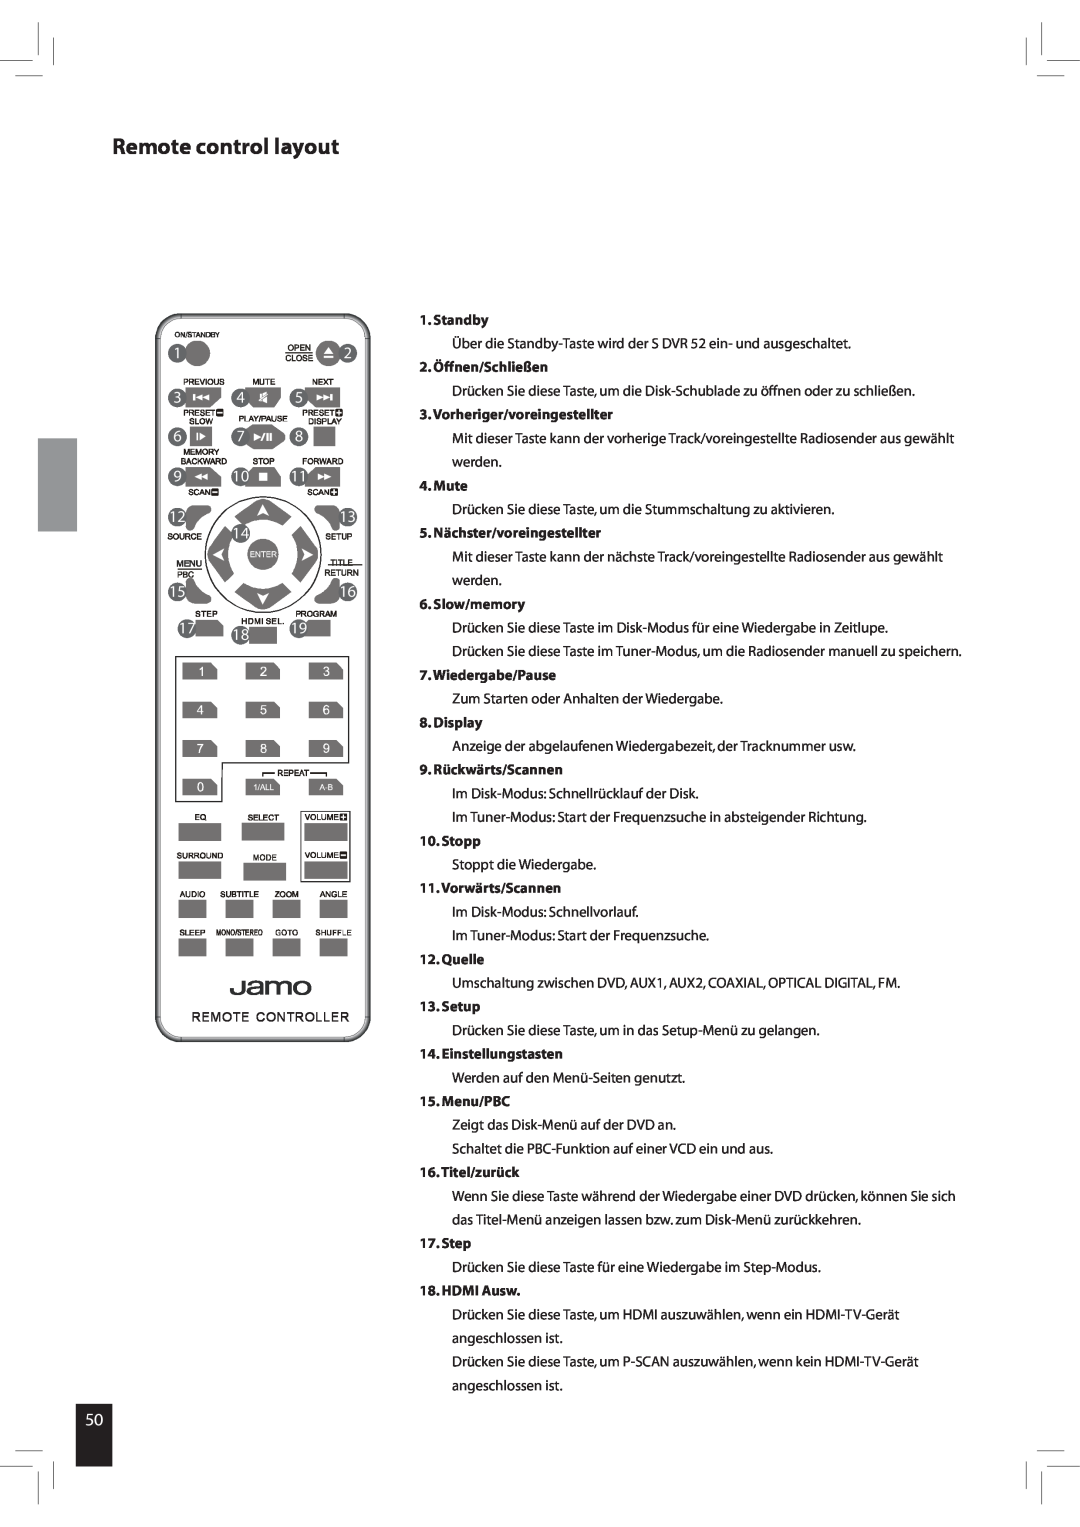 JAMO S 502 Remote control layout, Standby, 2. Öffnen/Schließen, Vorheriger/voreingestellter, Mute, Slow/memory, Display 